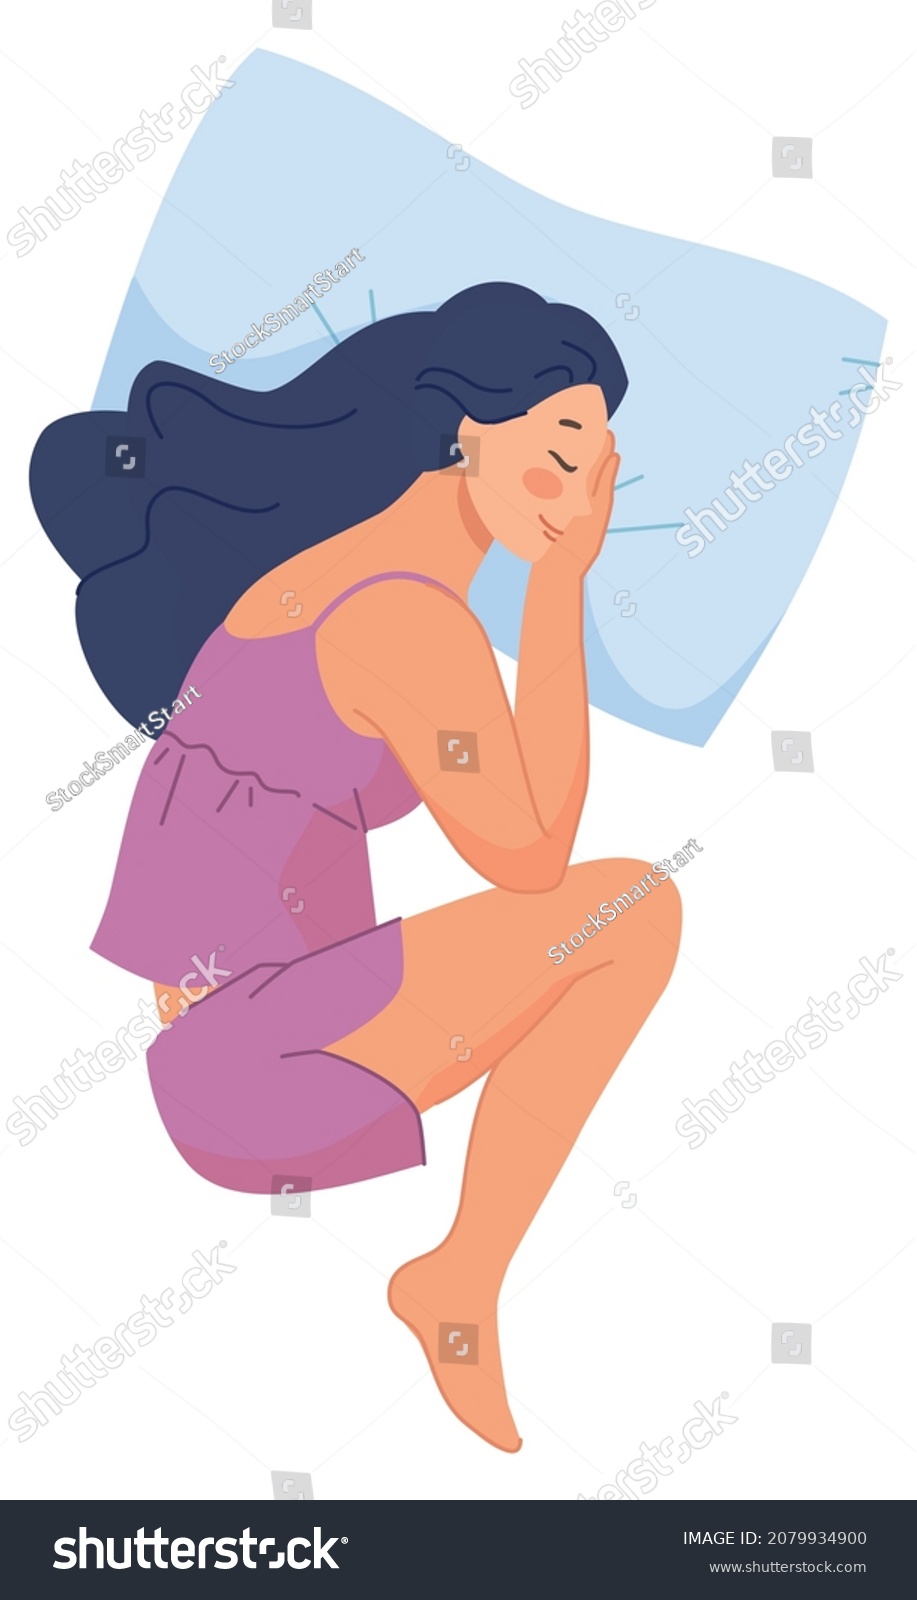 667 Woman fetal position Images, Stock Photos & Vectors | Shutterstock